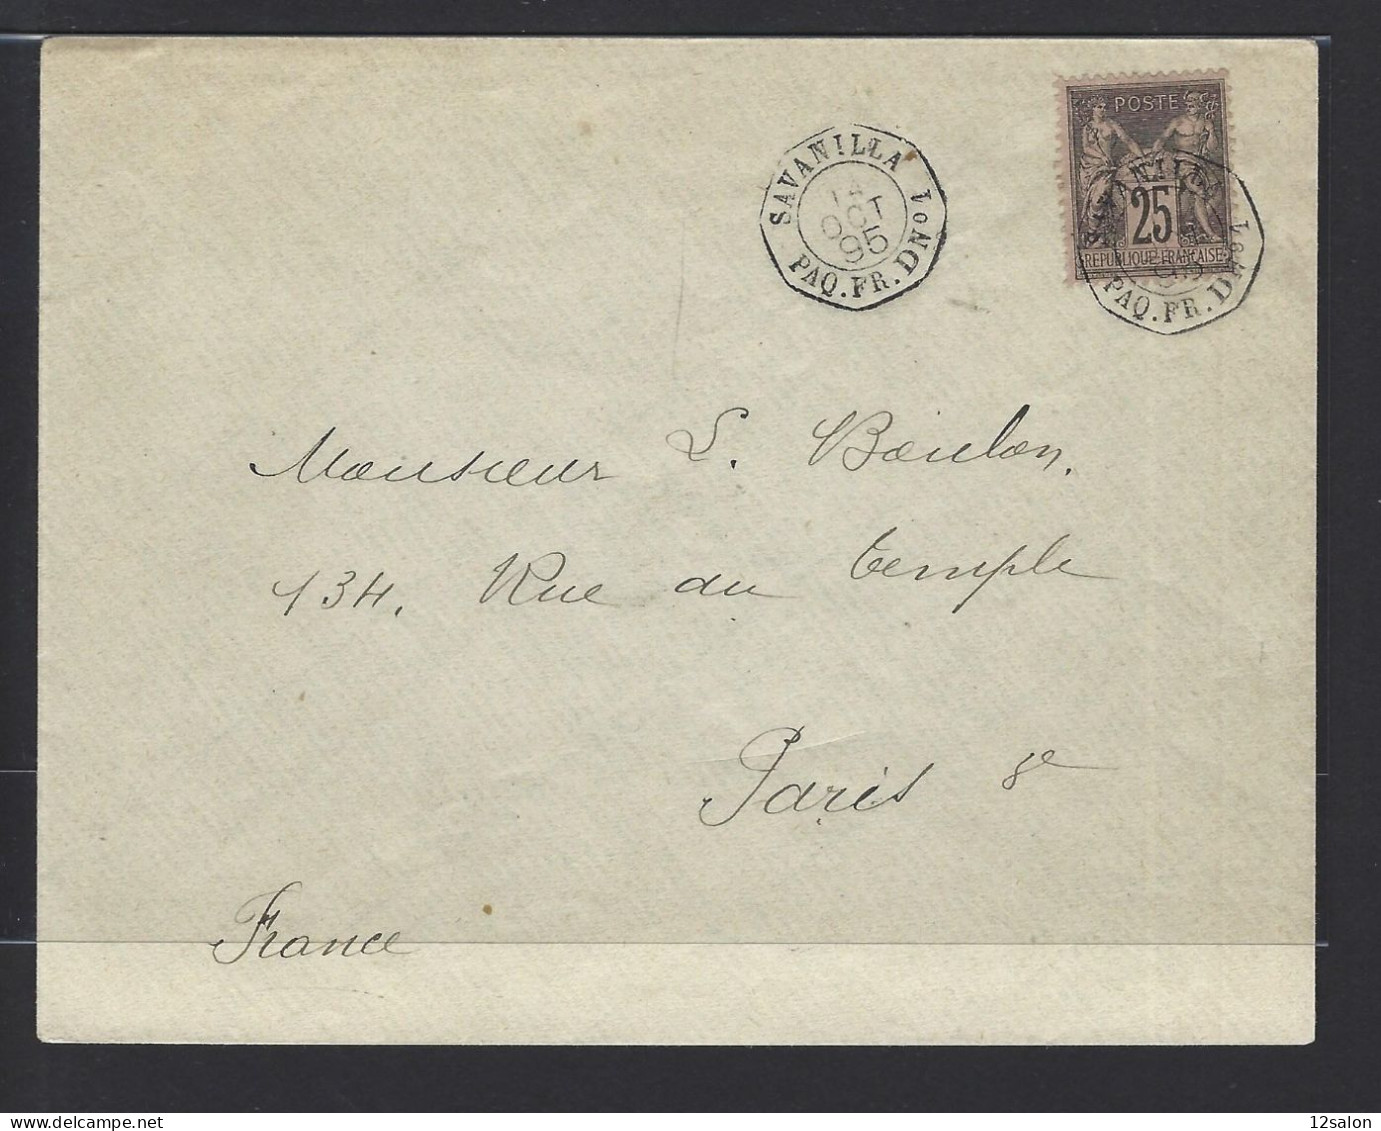 MARITIME SAGE N°97 OBL CAD Octogone Sur La Pointe "Savanilla Paq FR D N°1" (1895) Répété à Côté (Salles N°1505 - Ind 20) - Maritieme Post